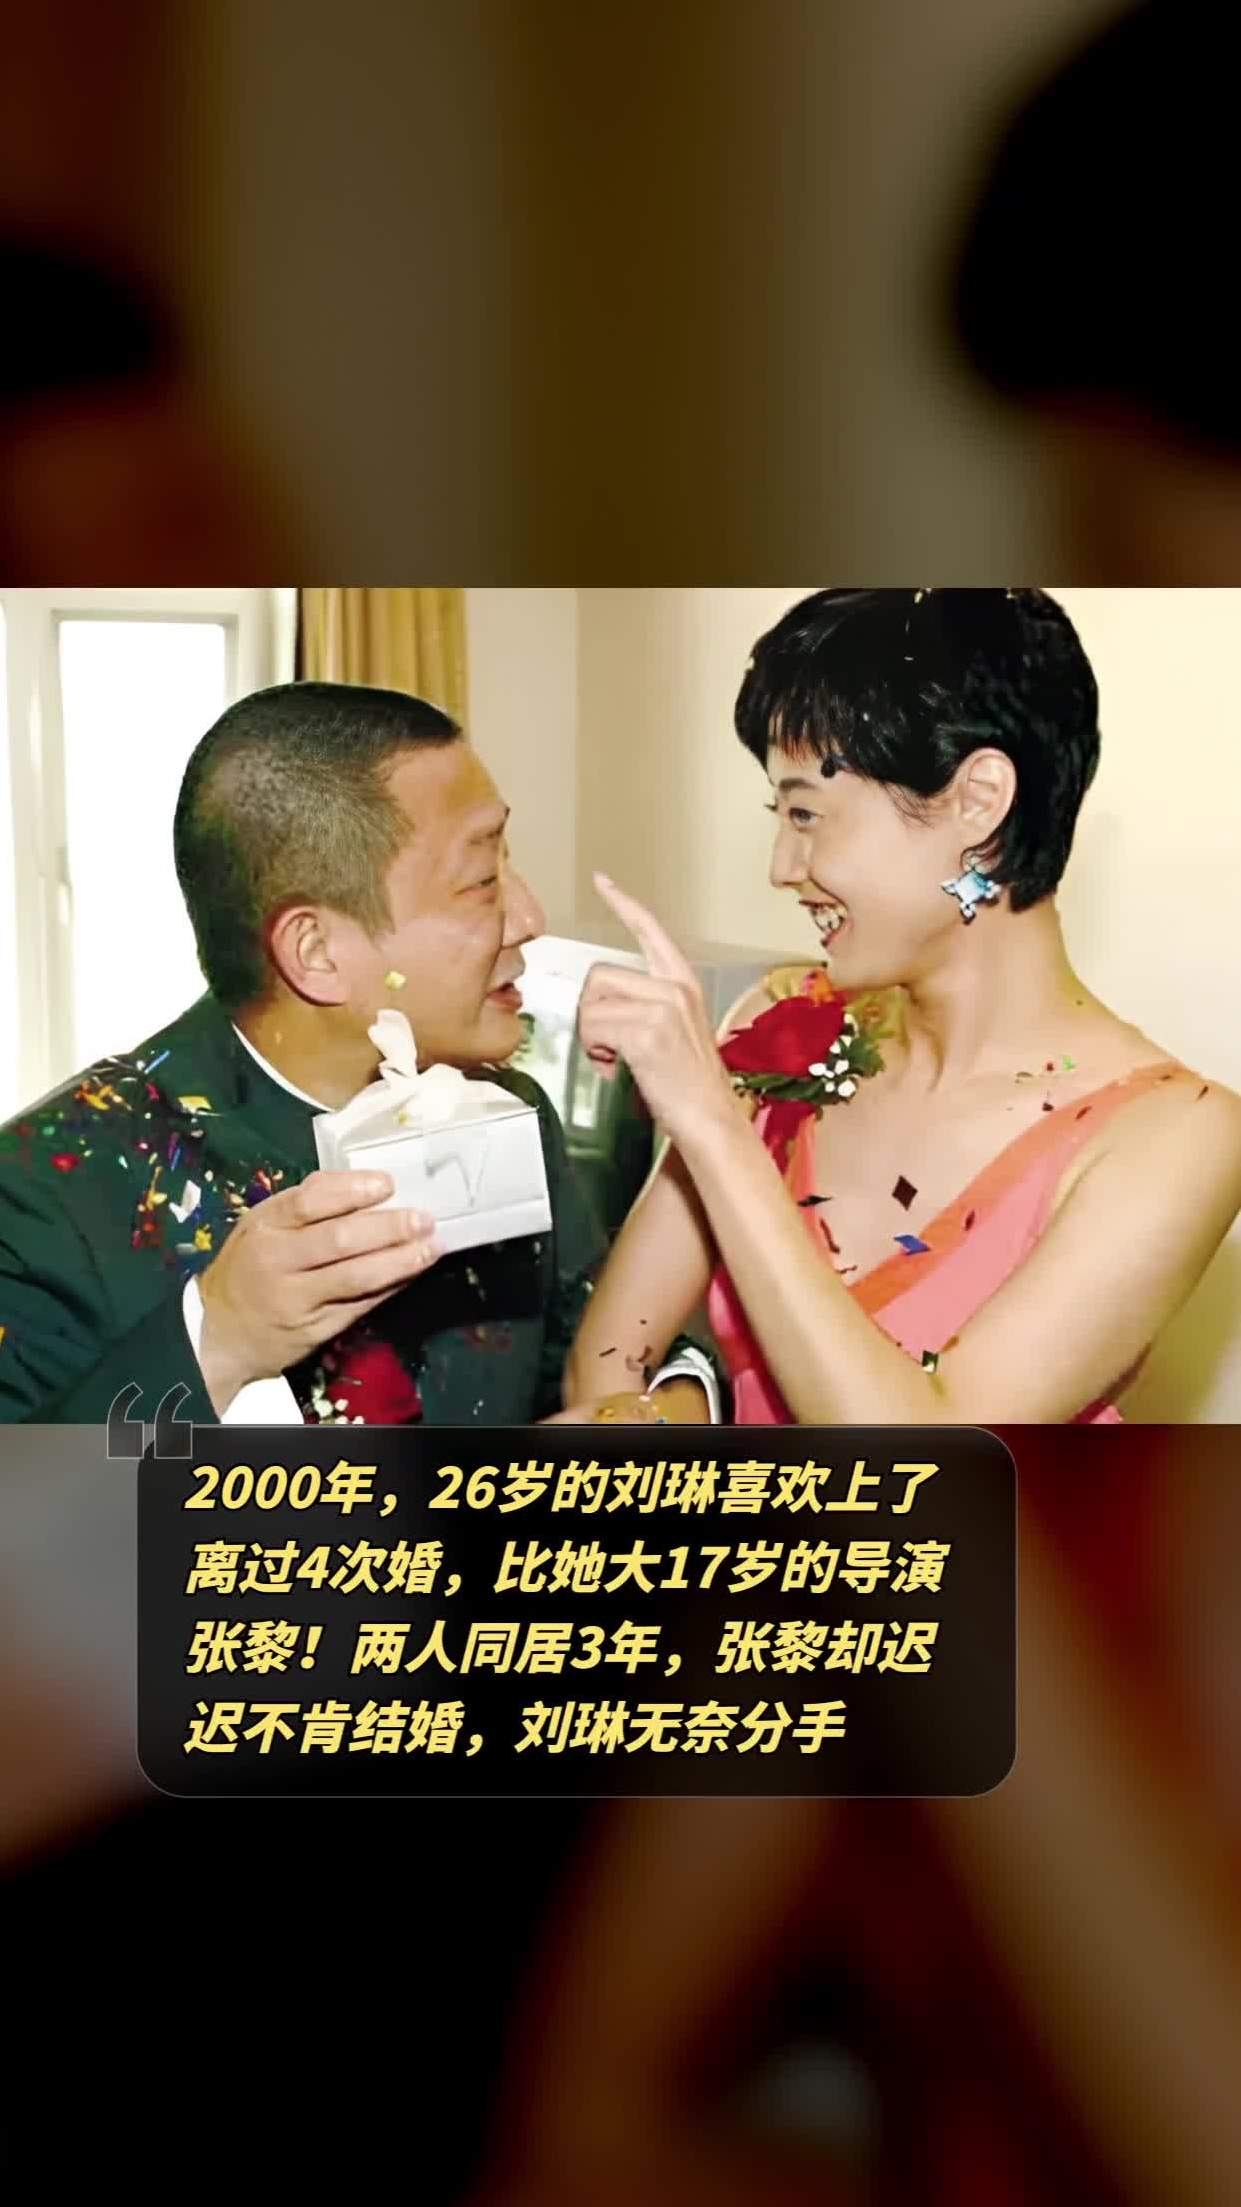 两人同居3年,张黎却迟迟不肯结婚,刘琳无奈分手